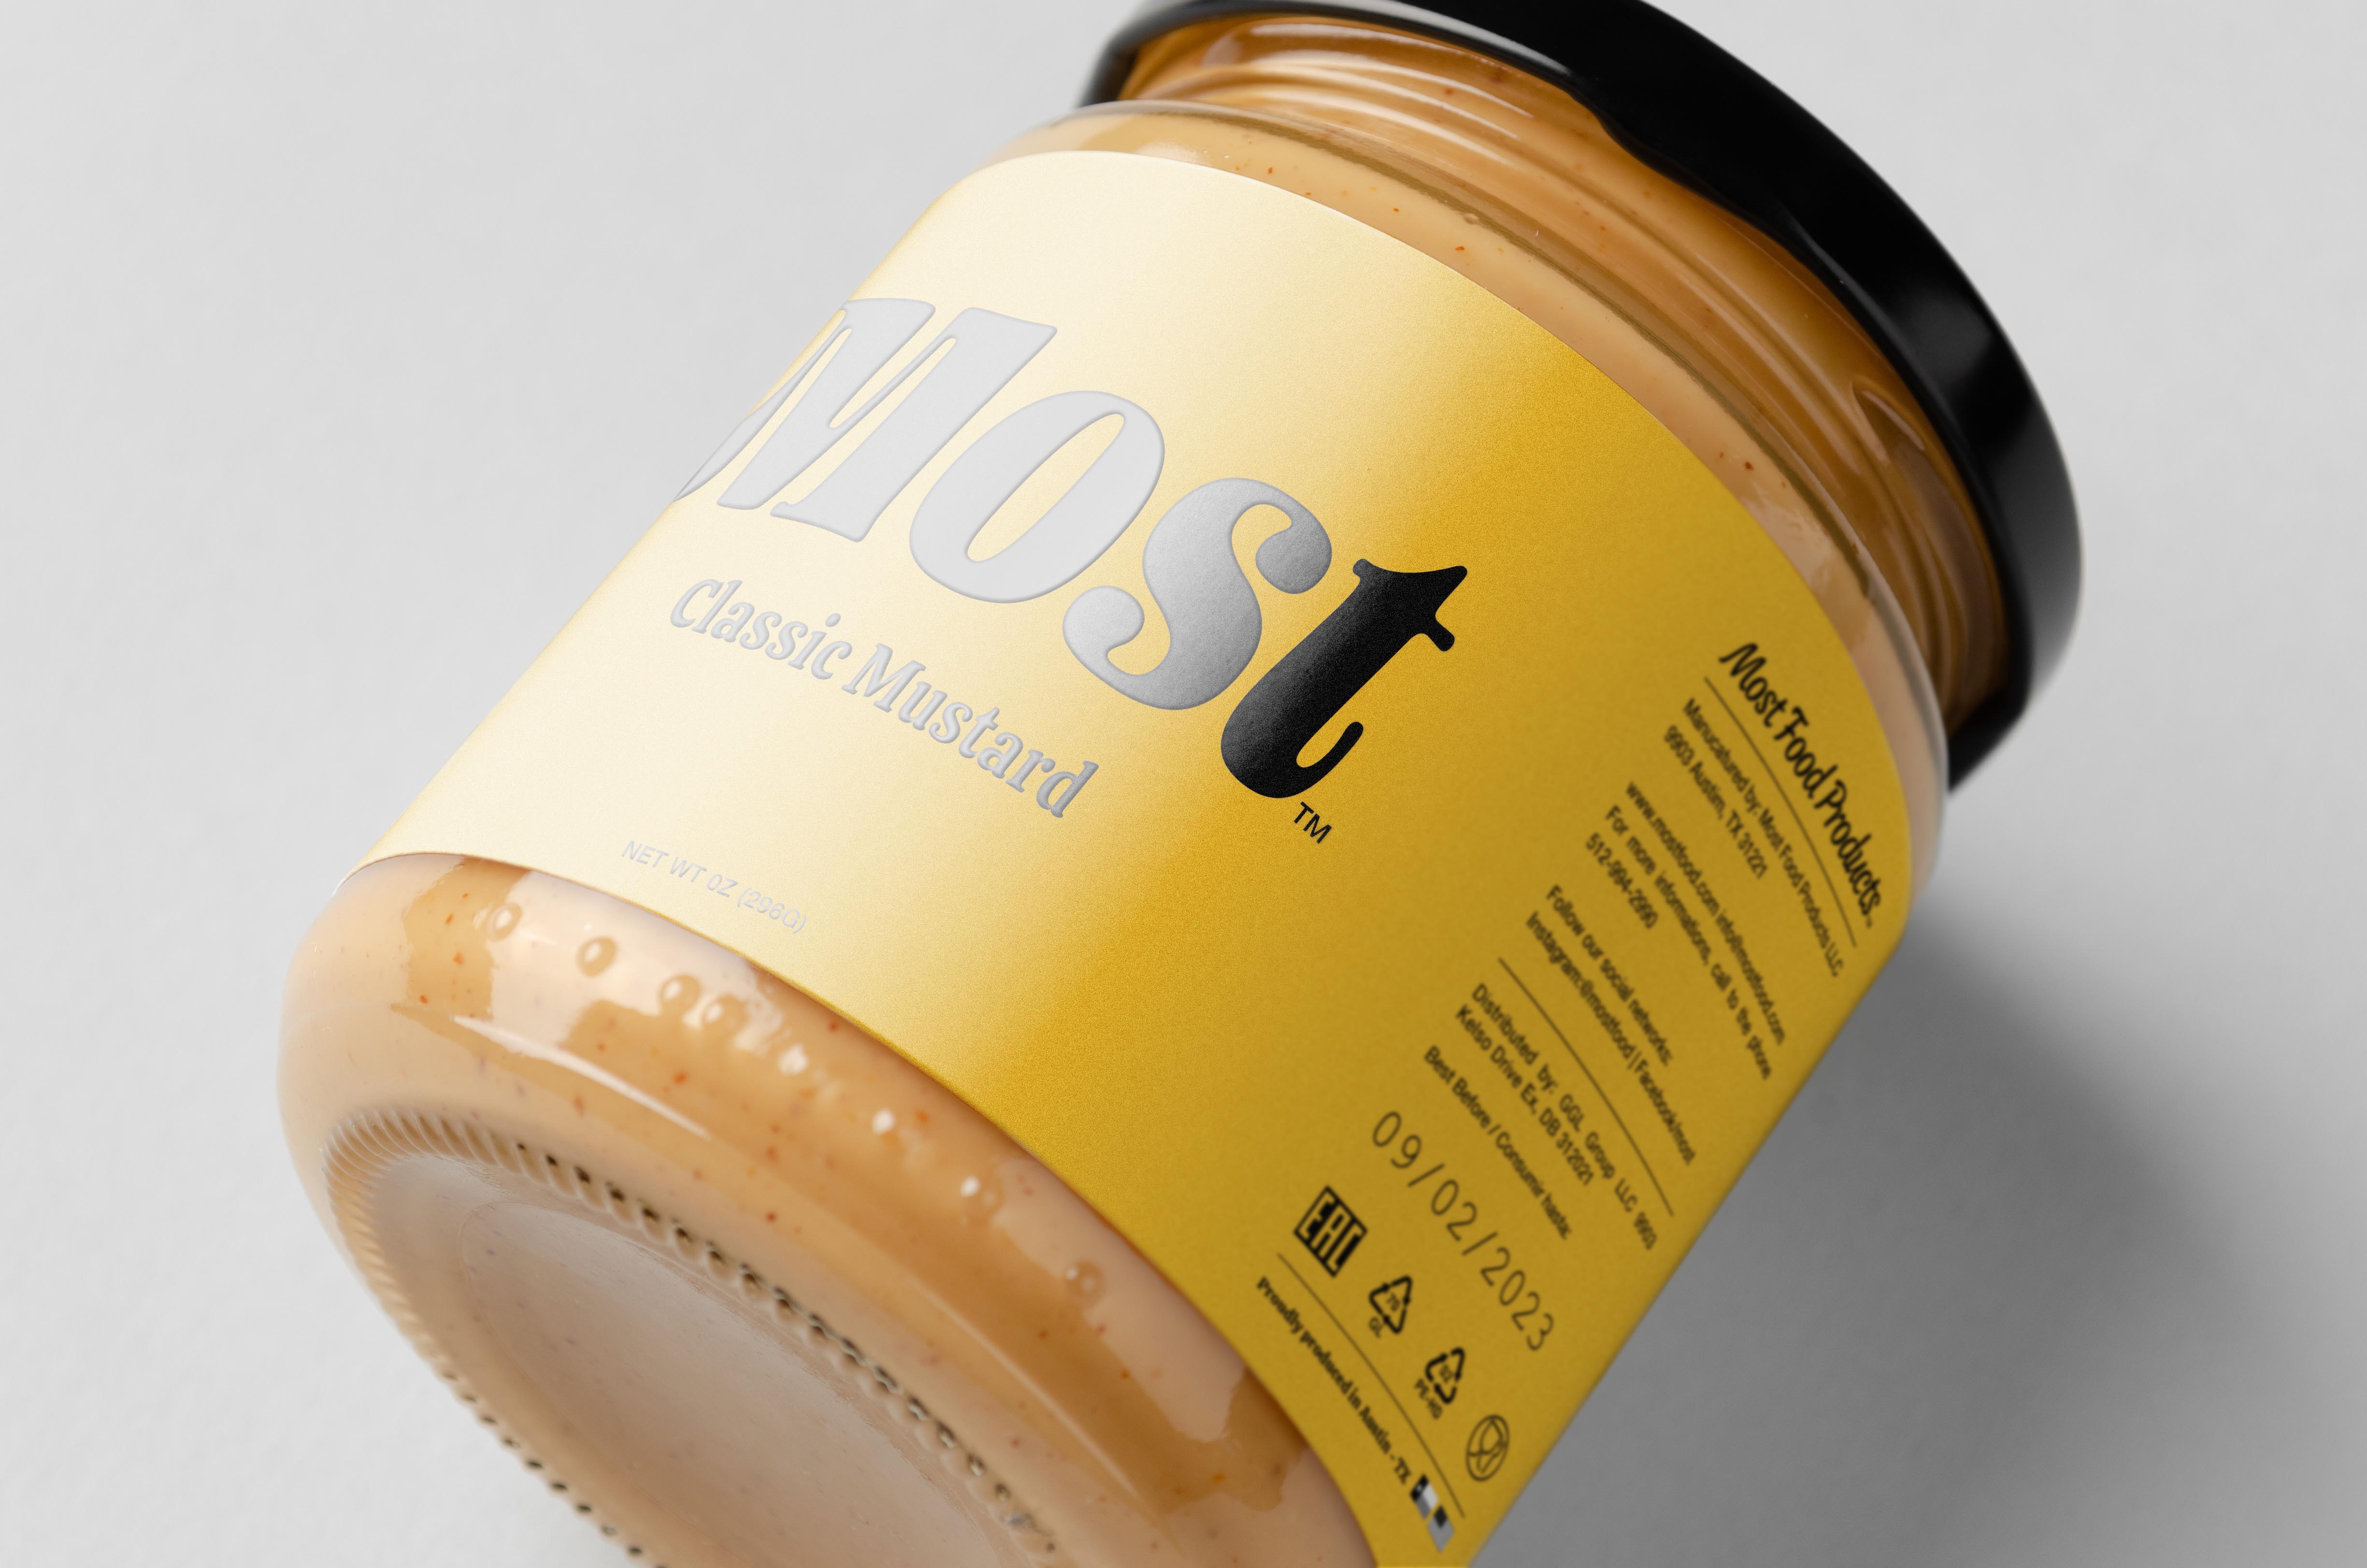 Estudio Leo Tavares Develops Label for Most Mustard